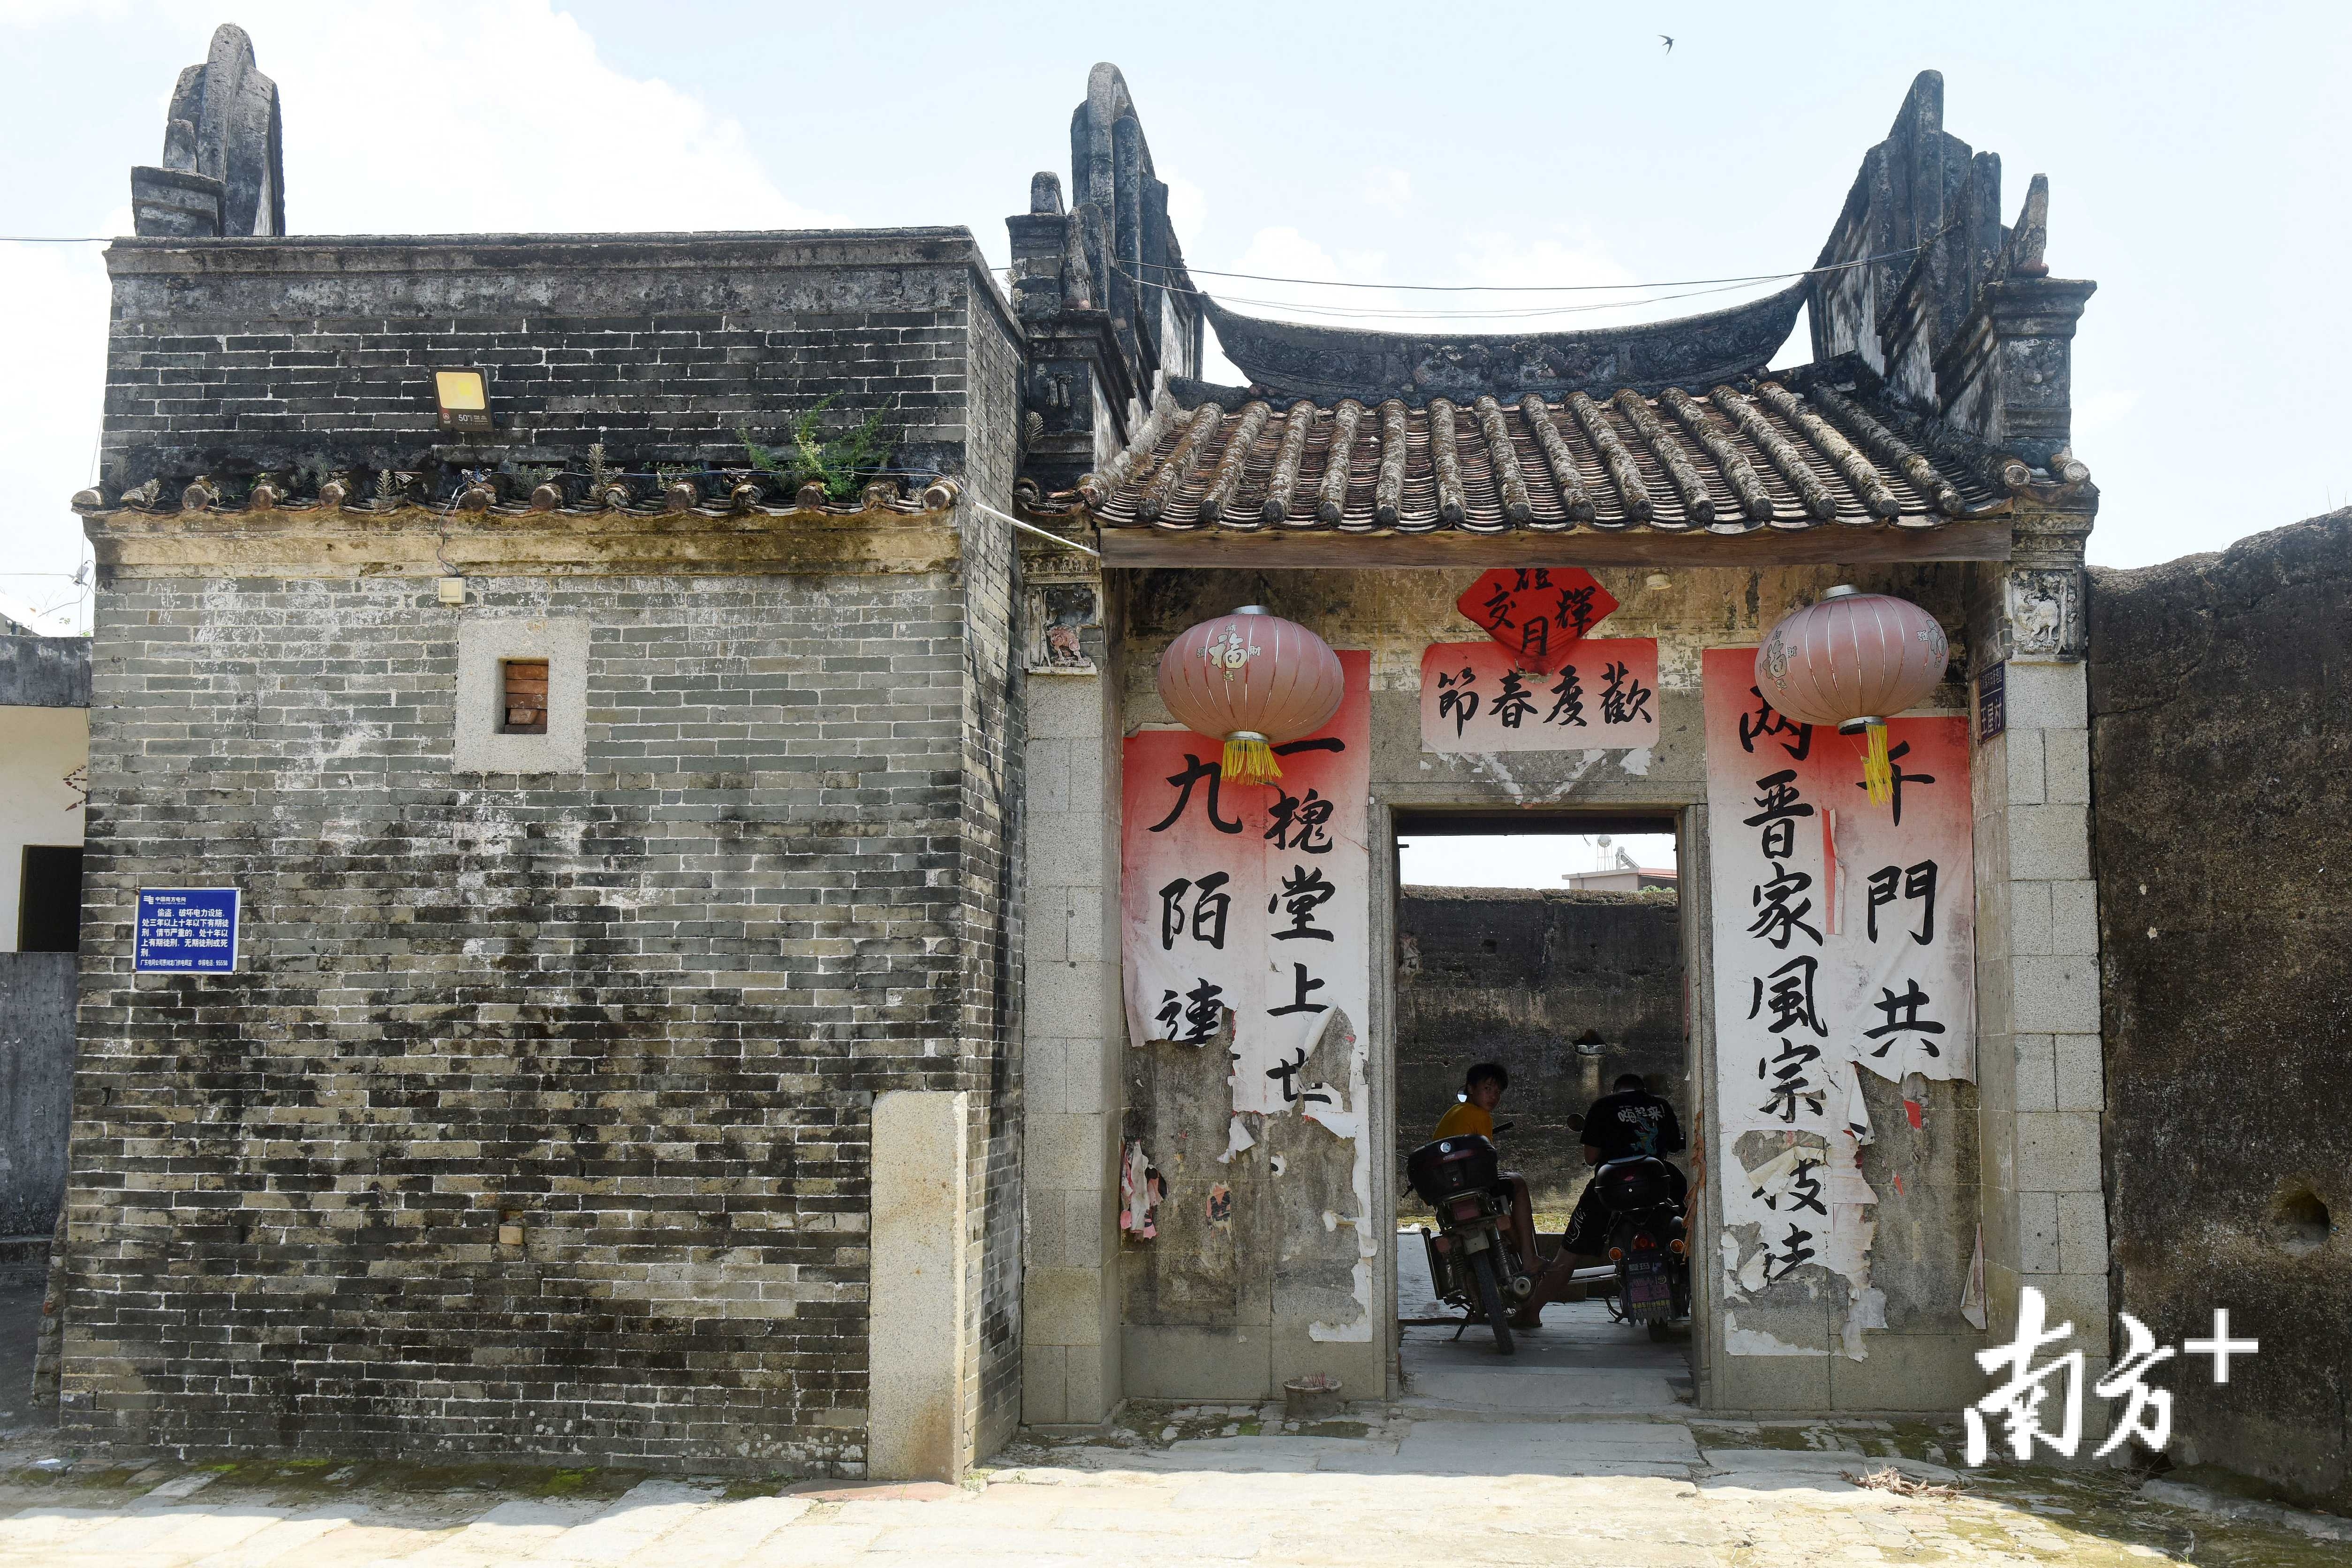 拍了一张照、惠州古城门照片 - 户外旅游 梅州时空